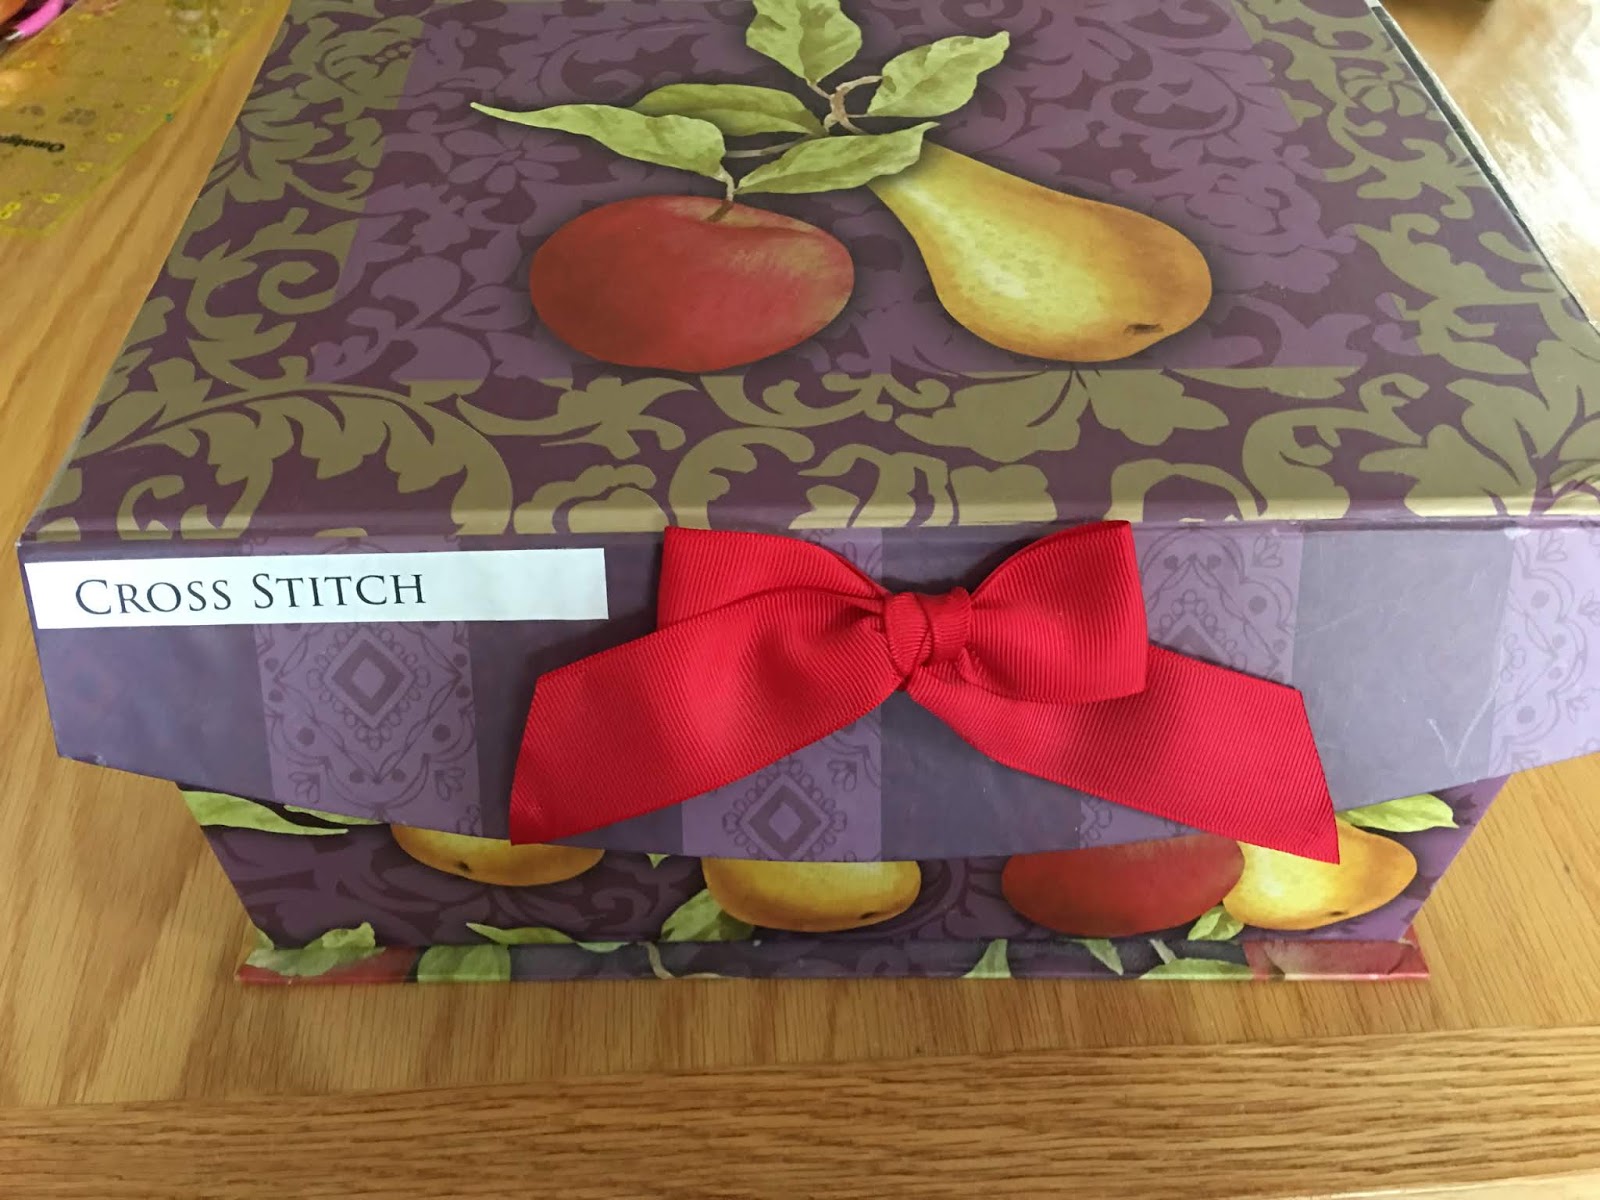 Juicy Fruits Combo Subscription Box Cross Stitch Gift Cross Stitch